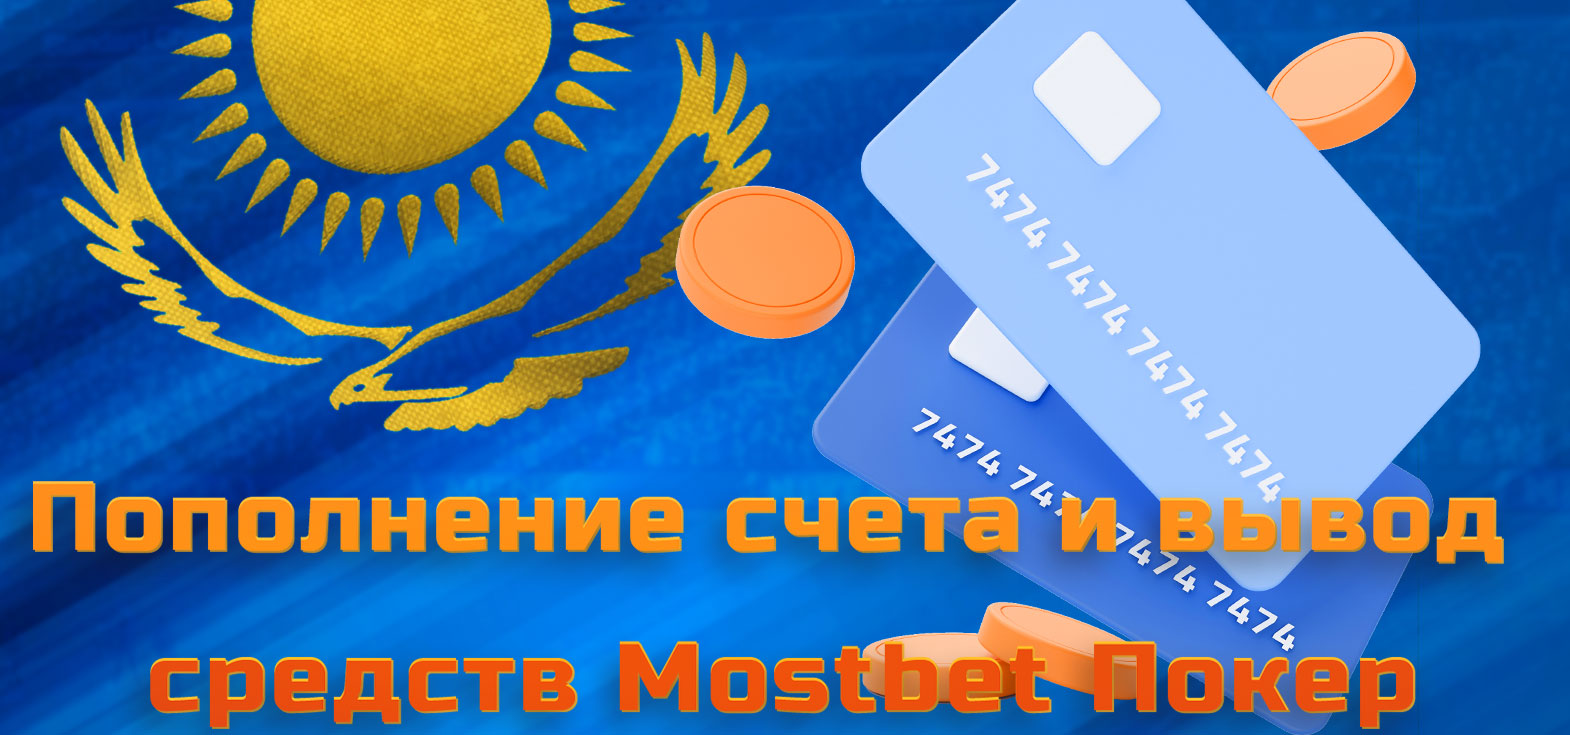 Все доступные способы пополнения и снятия средств с игрового счёта в БК Mostbet Казахстан.